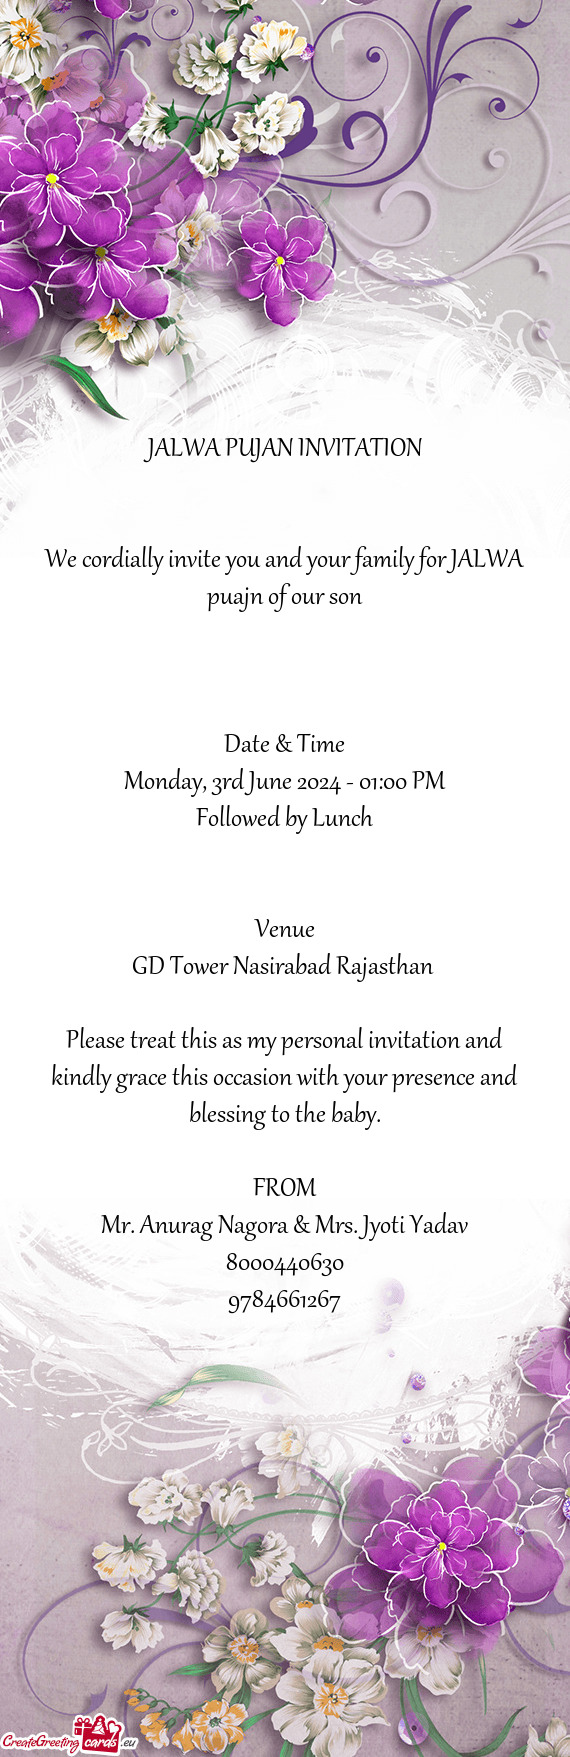 GD Tower Nasirabad Rajasthan